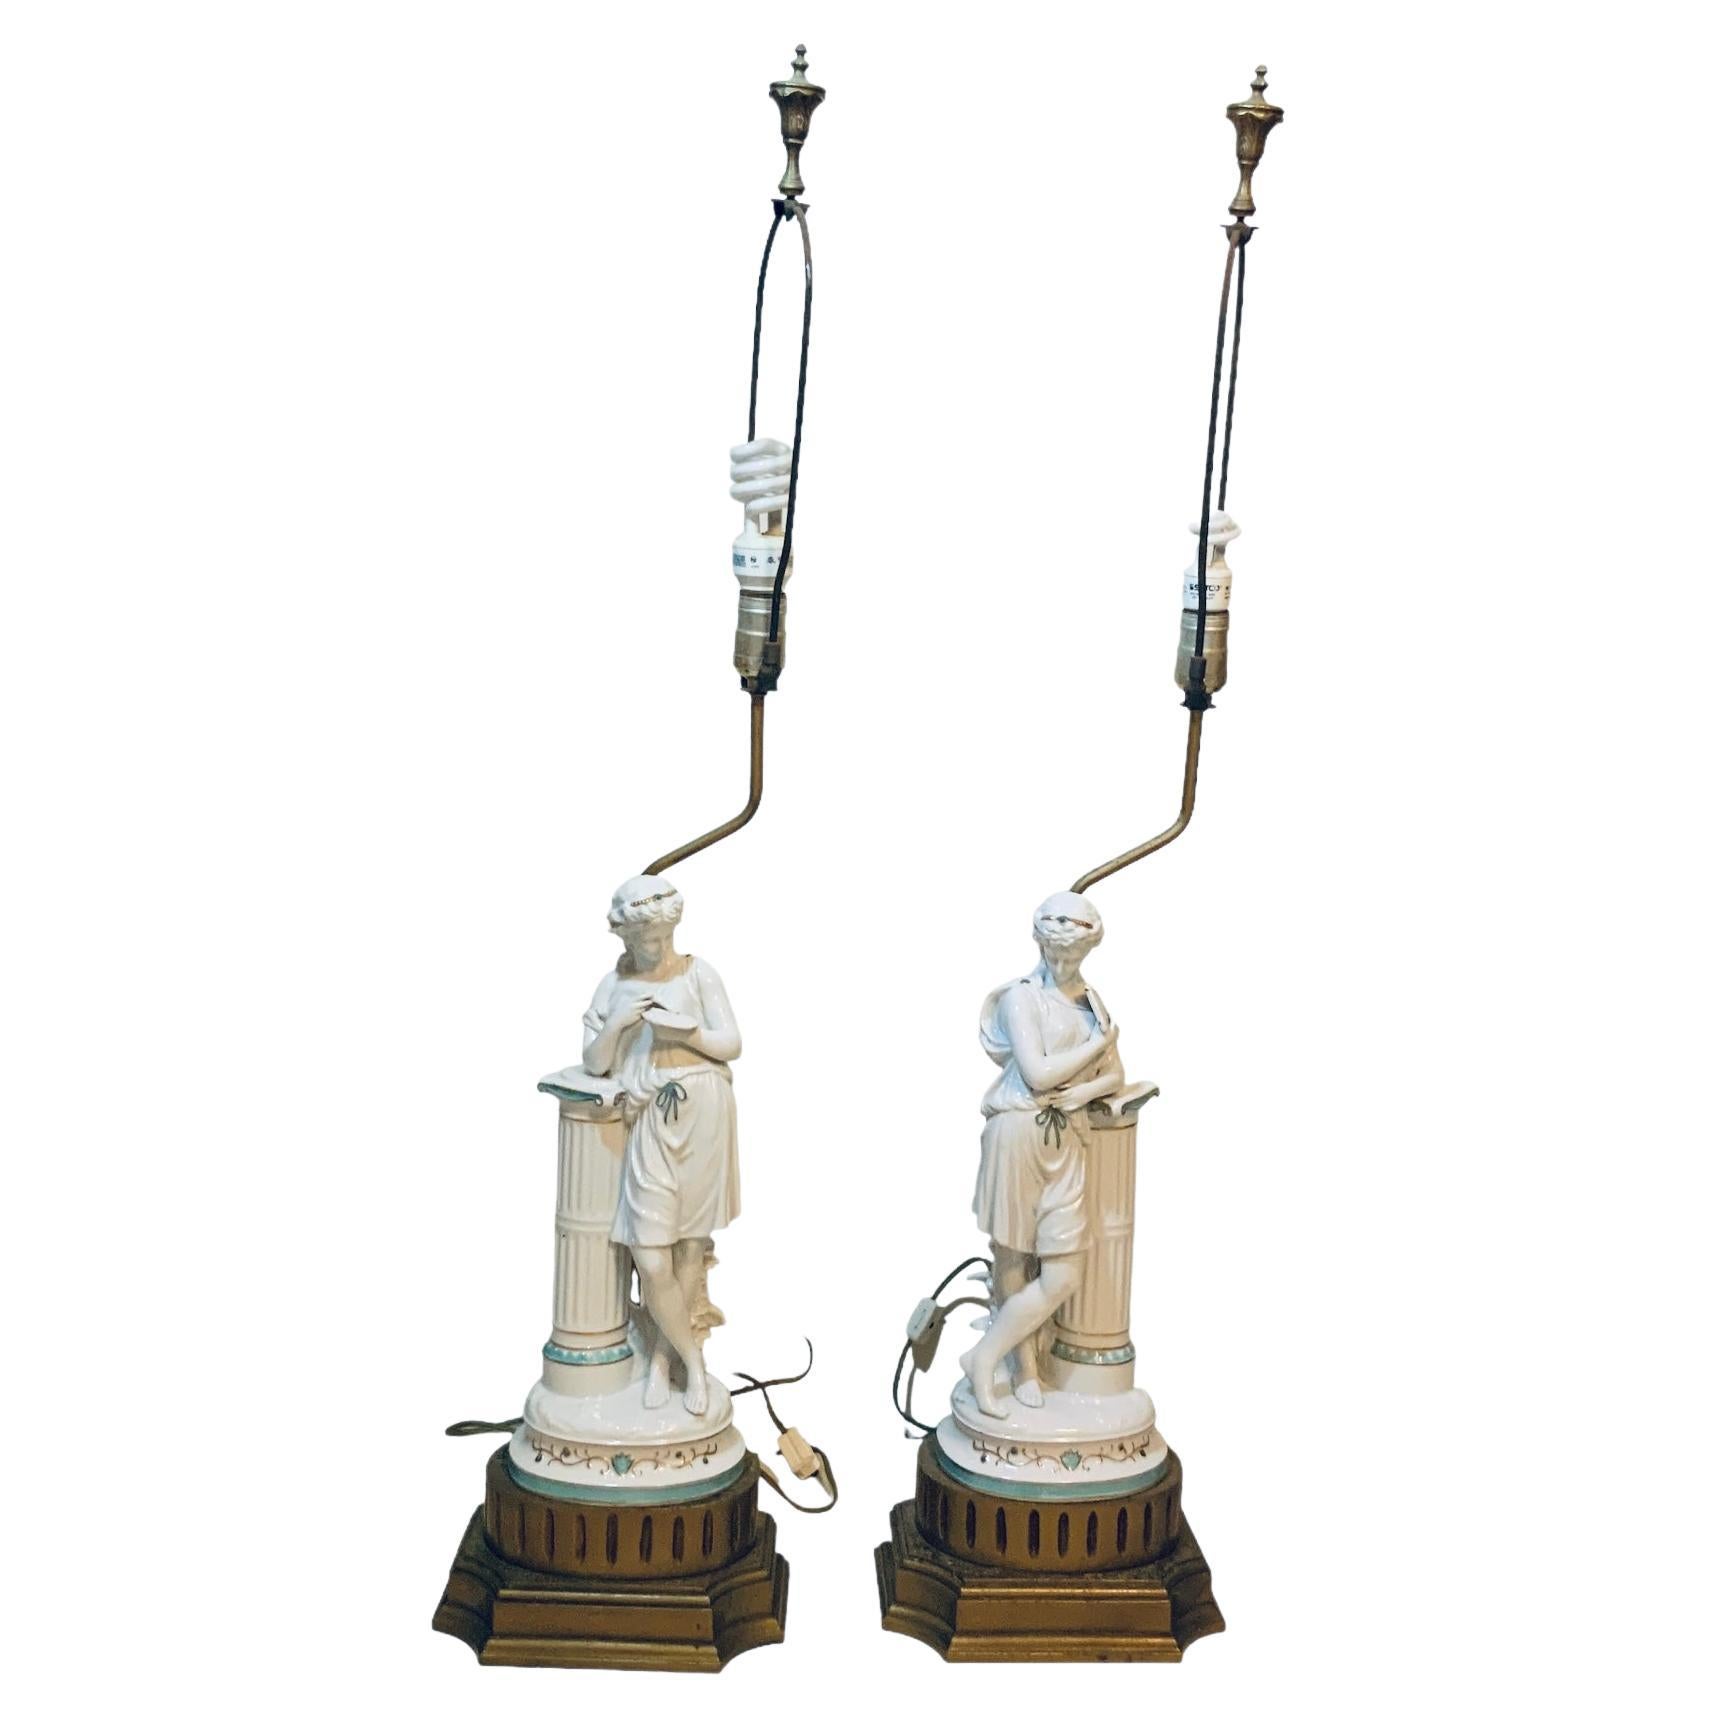 Minton Porcelain Pair Of Greek/ Roman Figures Sculptures Table Lamps For Sale